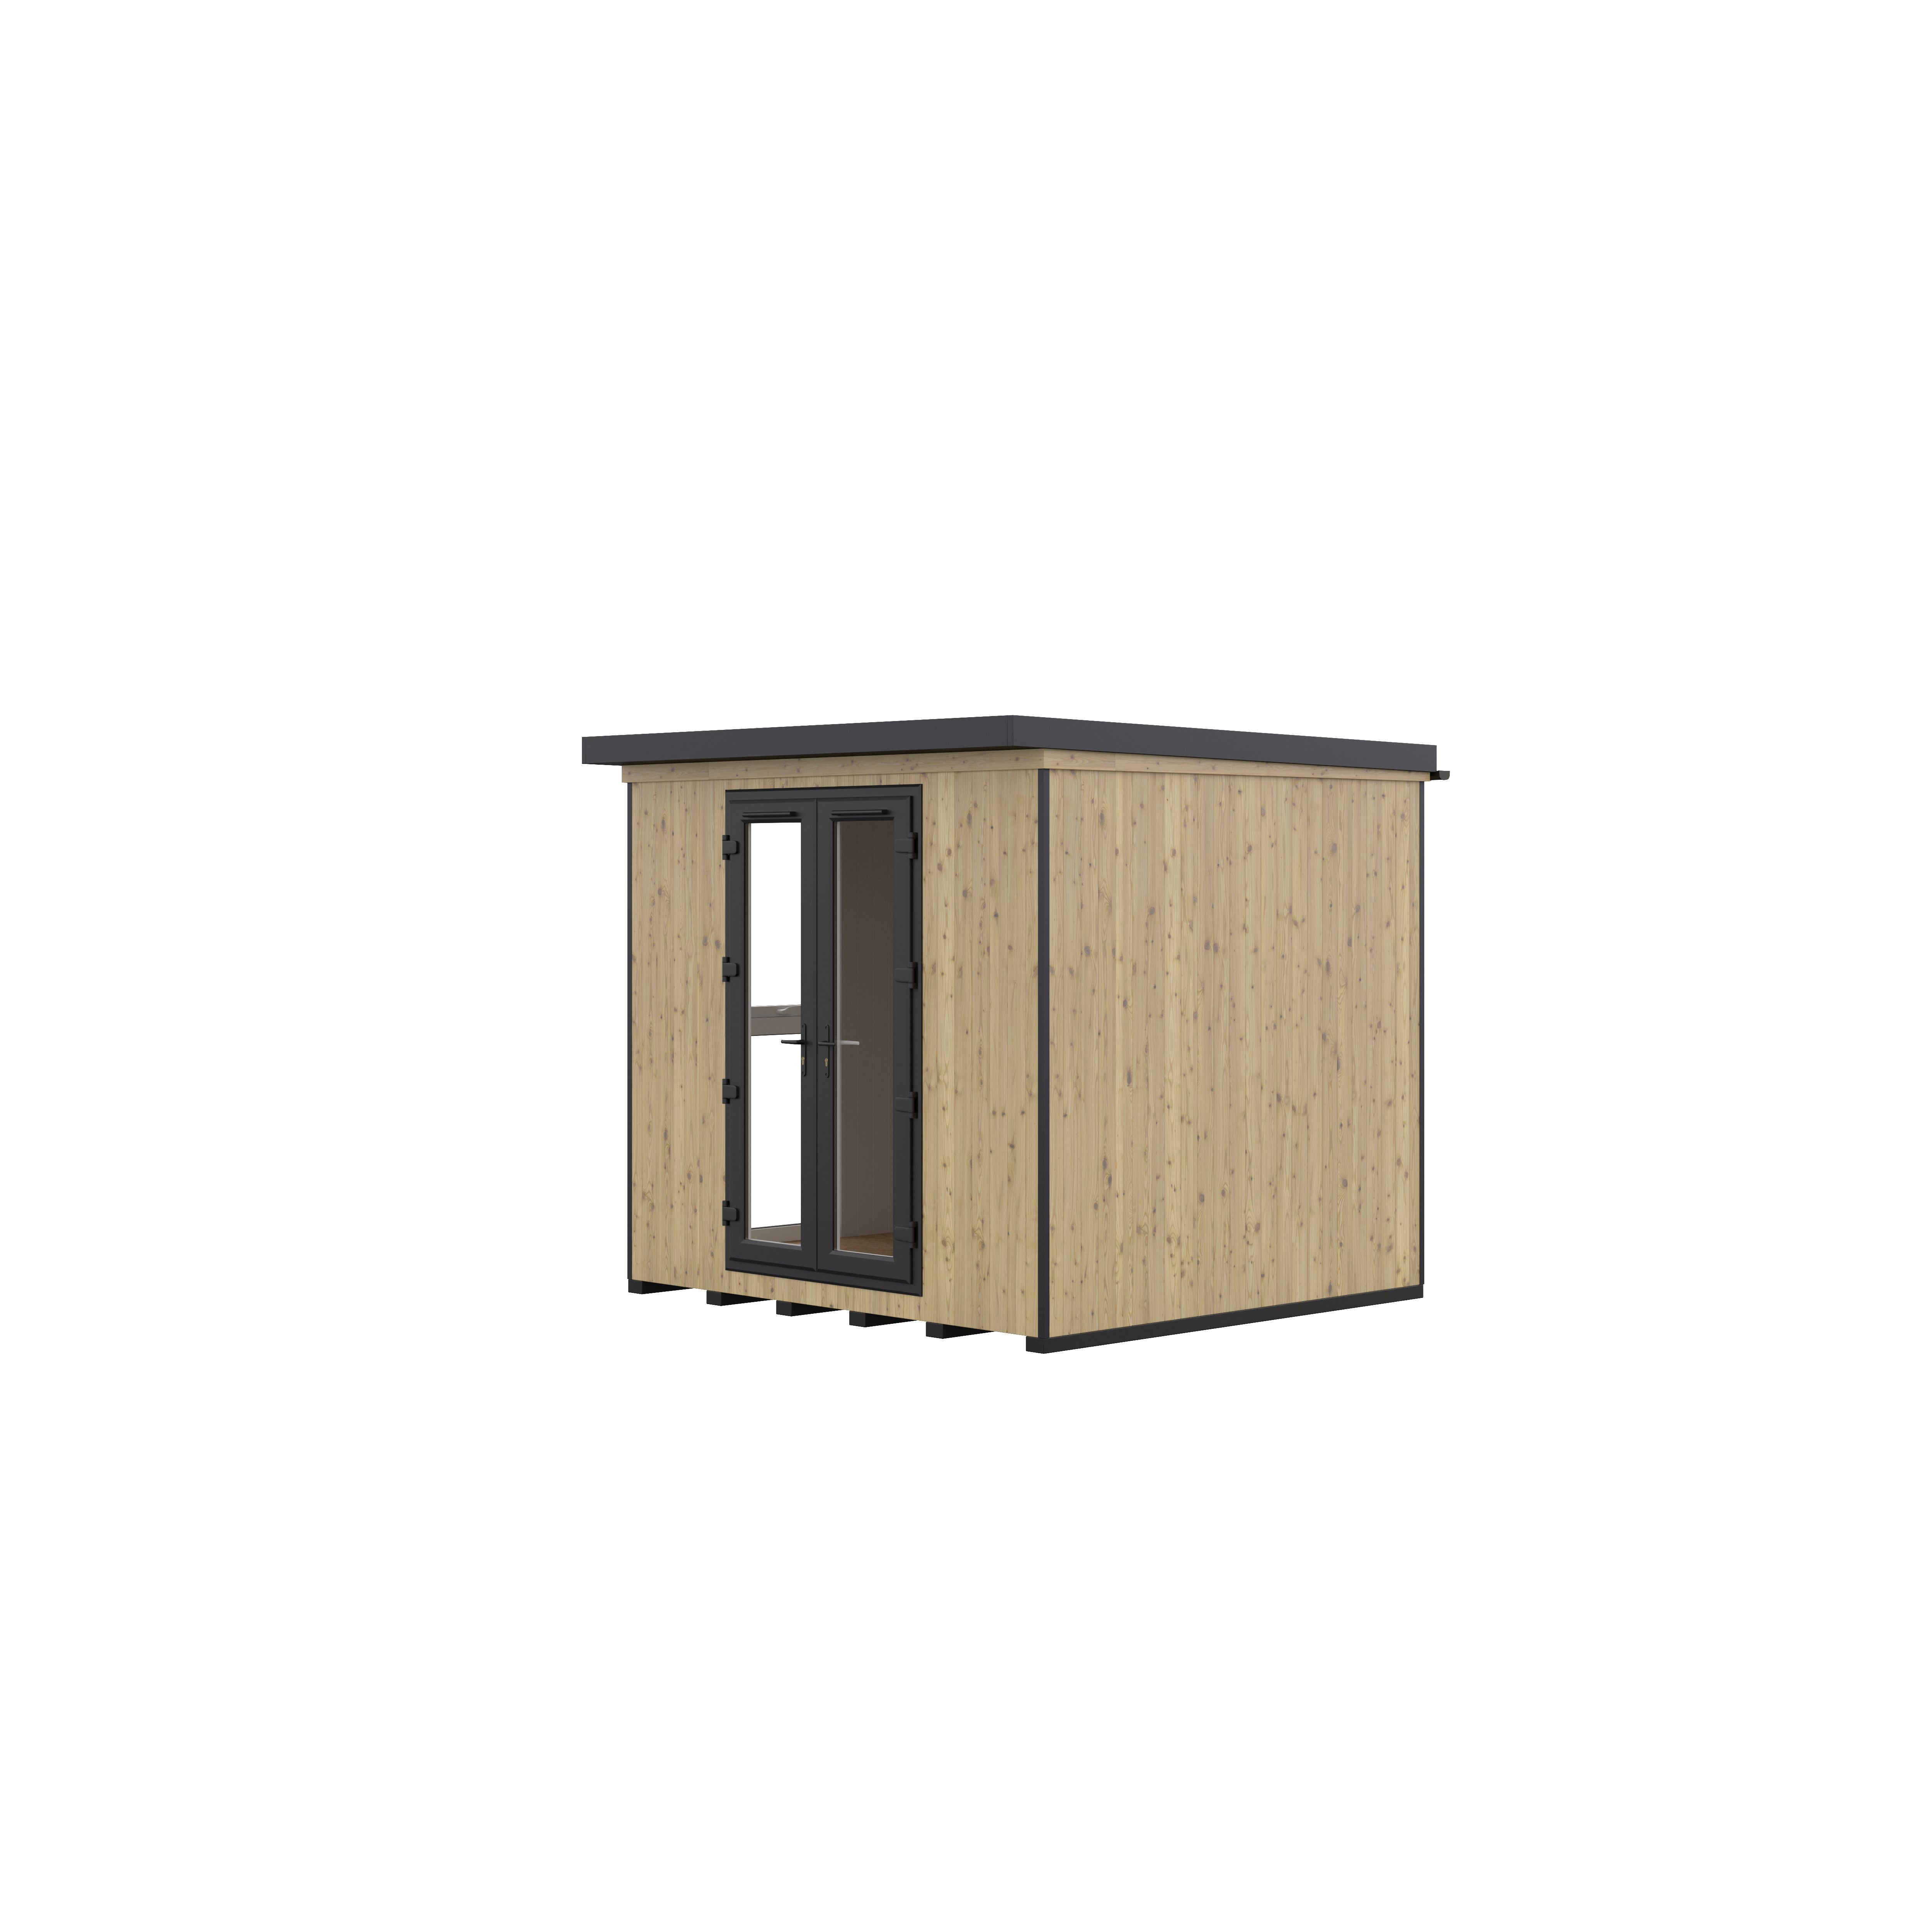 GoodHome Semora 8x9 ft with Double door Pent Wooden Garden room 2.4m x 2.6m (Base included)